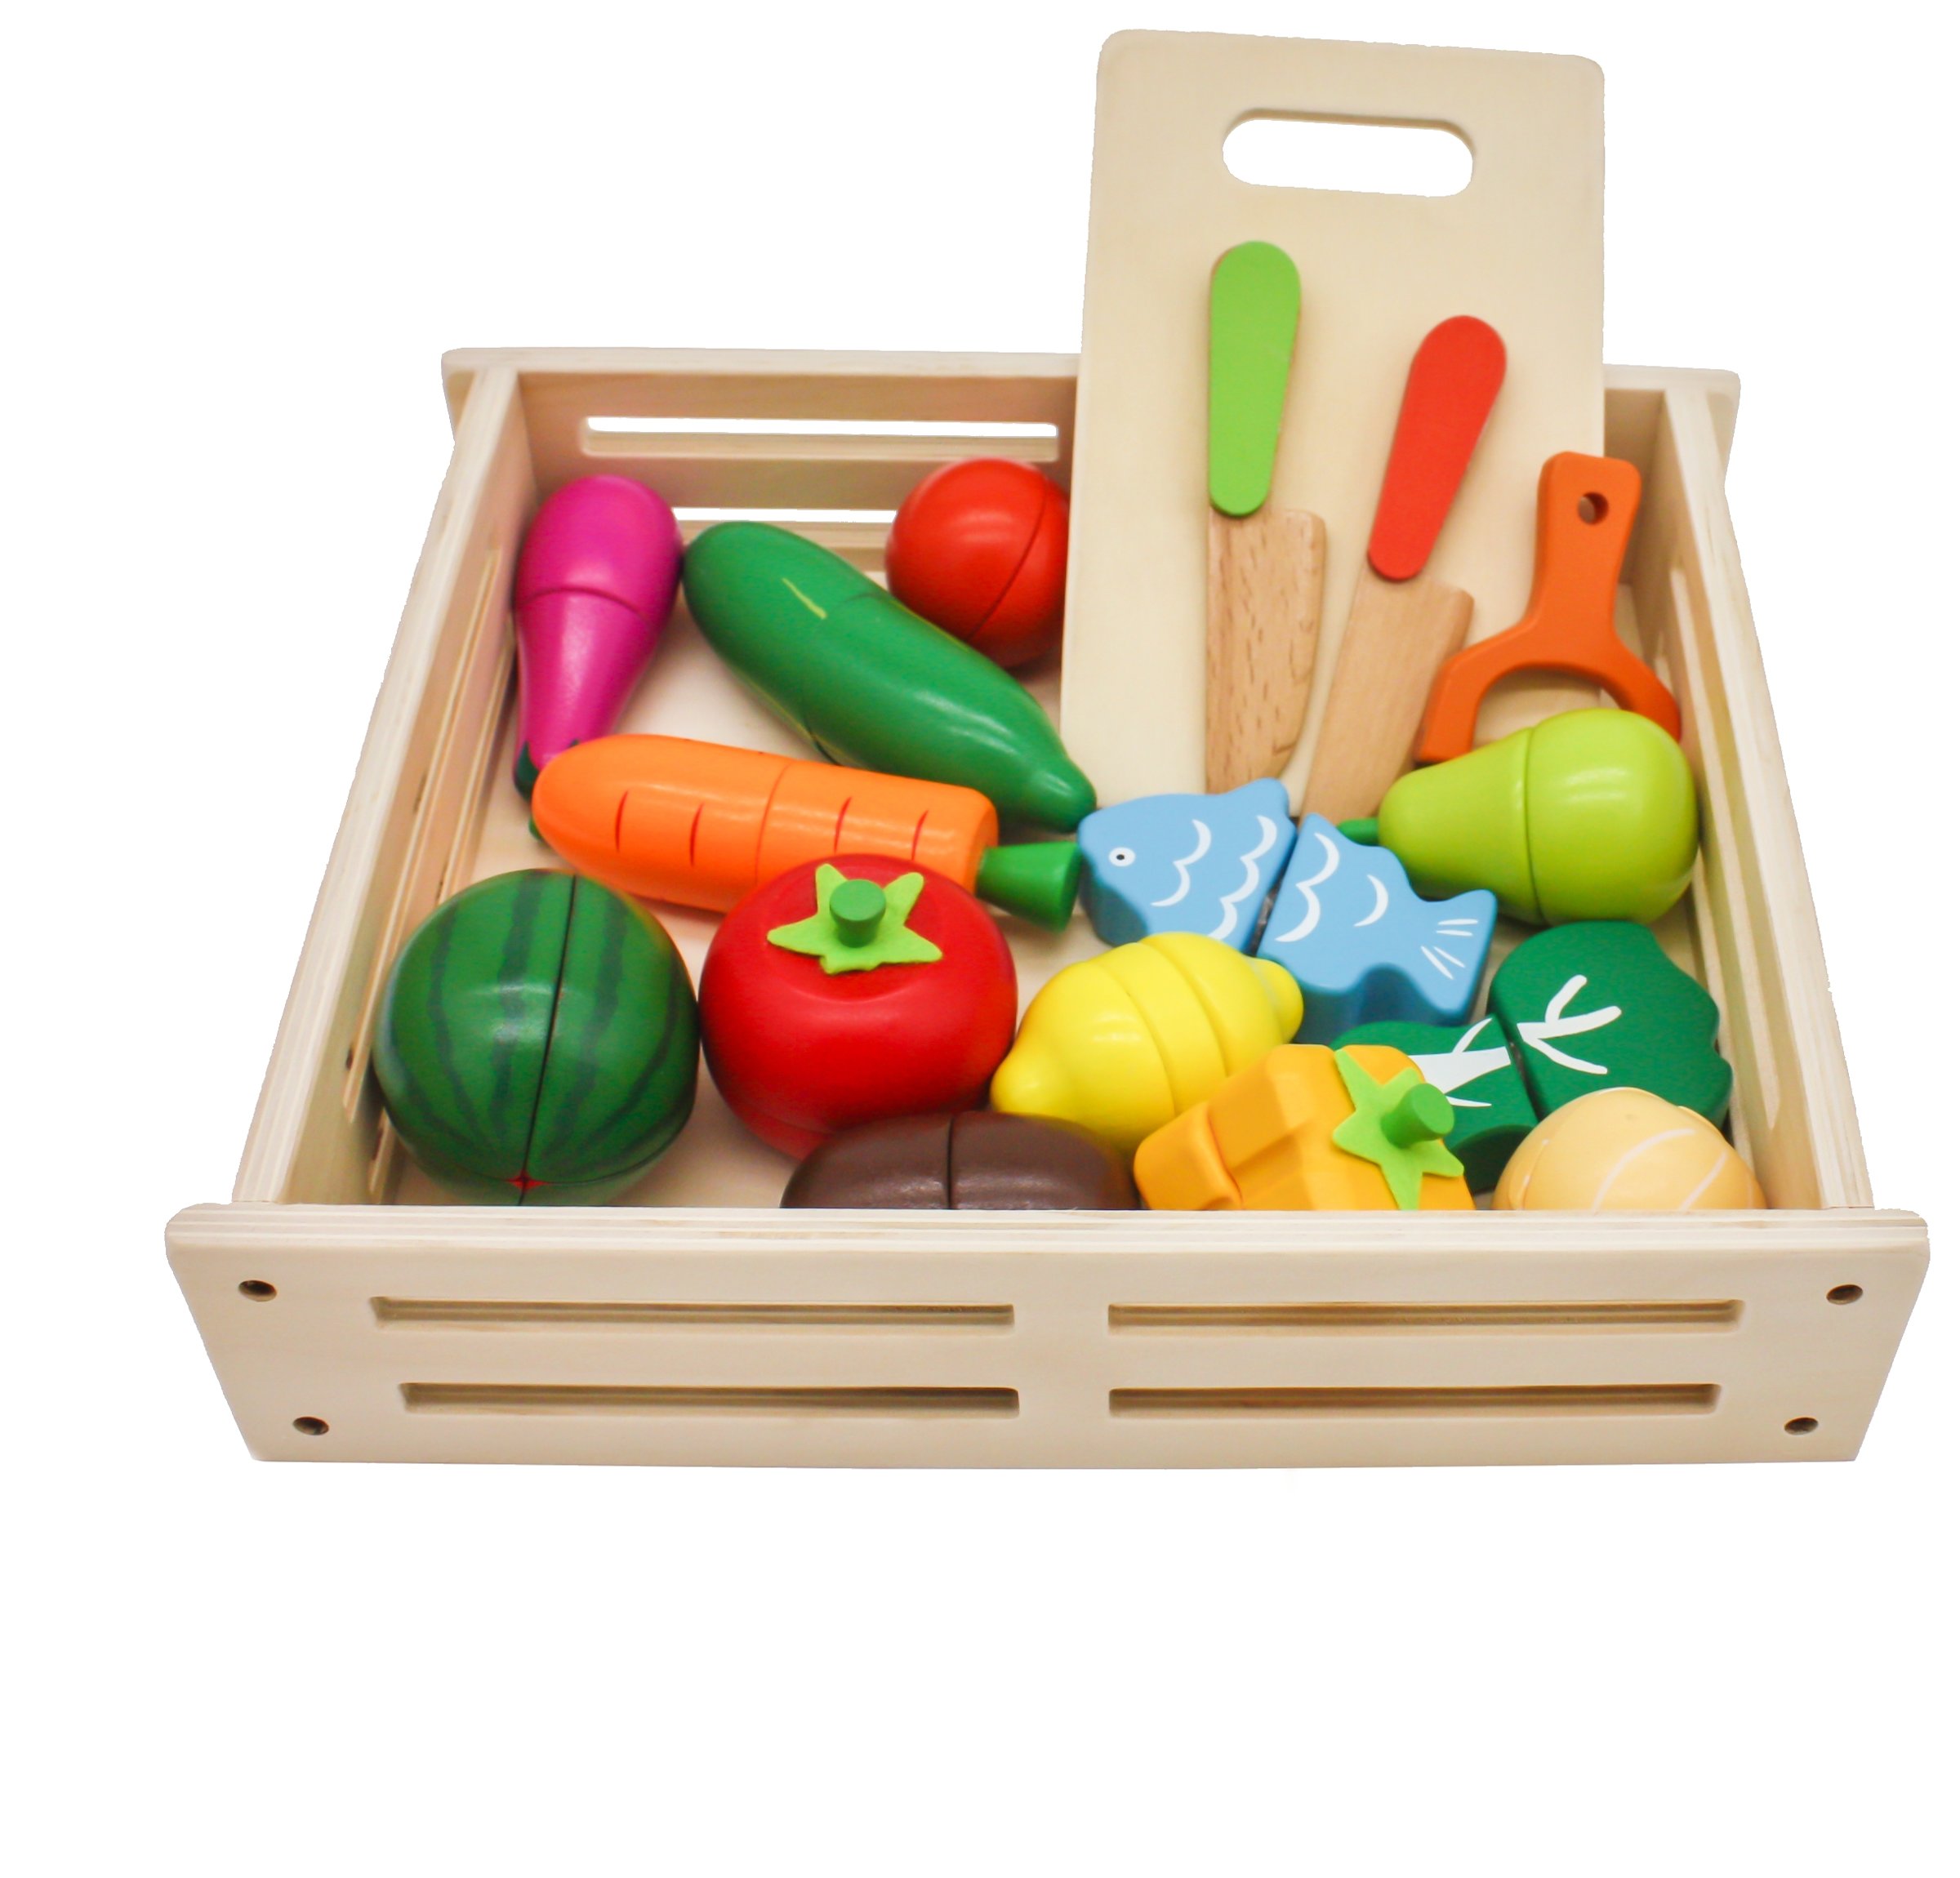 24 pièces/ensemble jouets de cuisine enfants coupe légumes fruits jouets en  plastique cuisine nourriture enfants